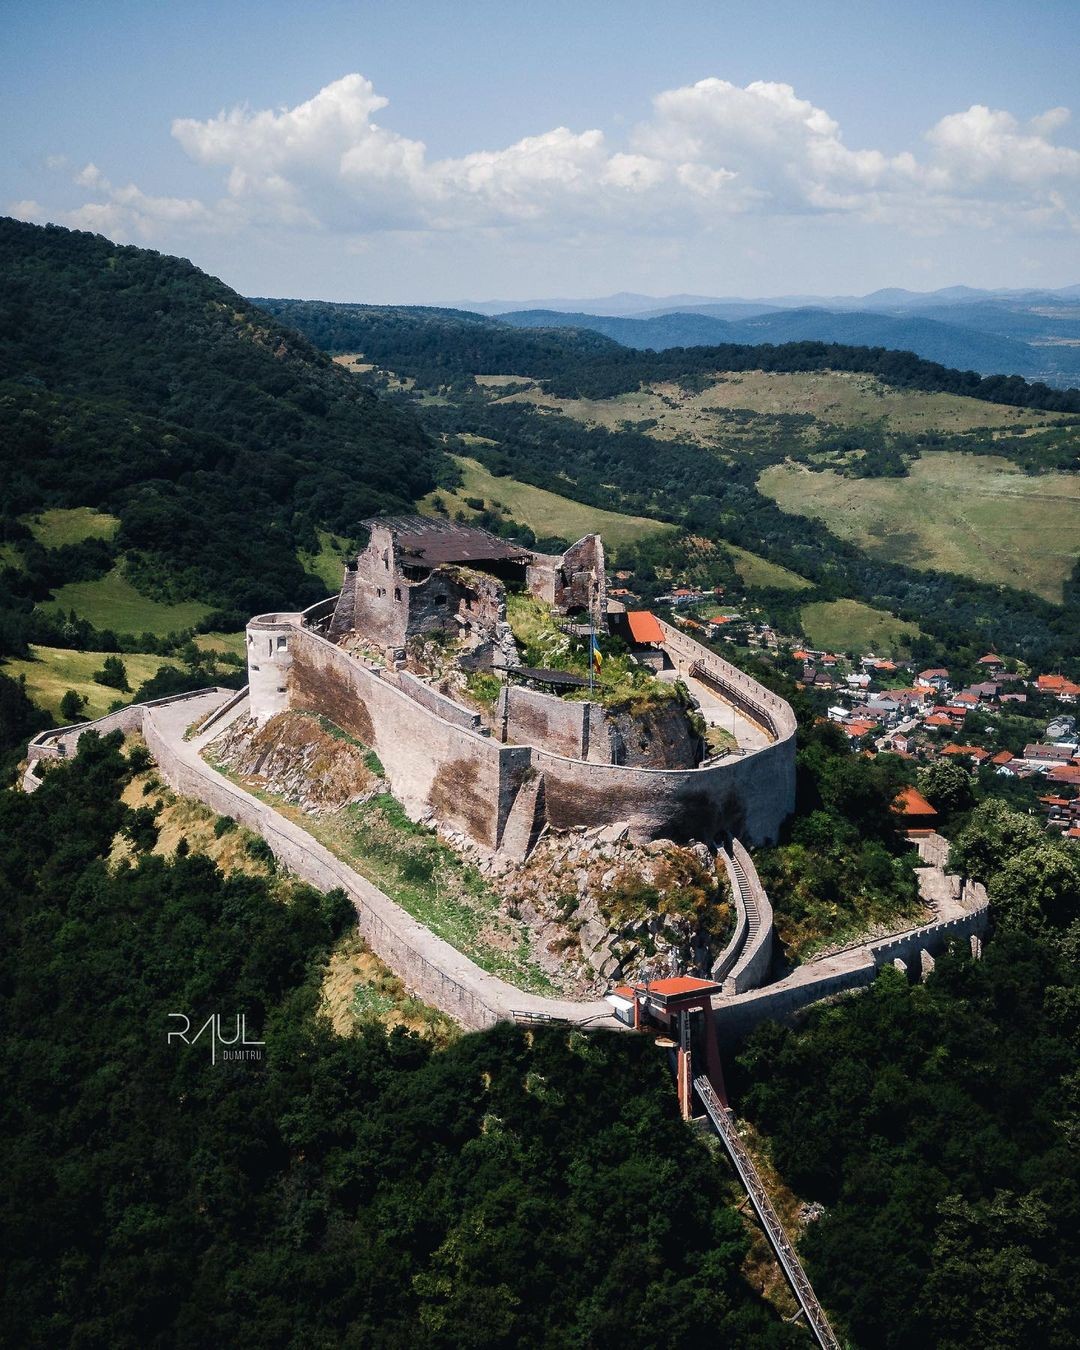 Cetatea Deva - 20 Best Medieval Citadels in Romania